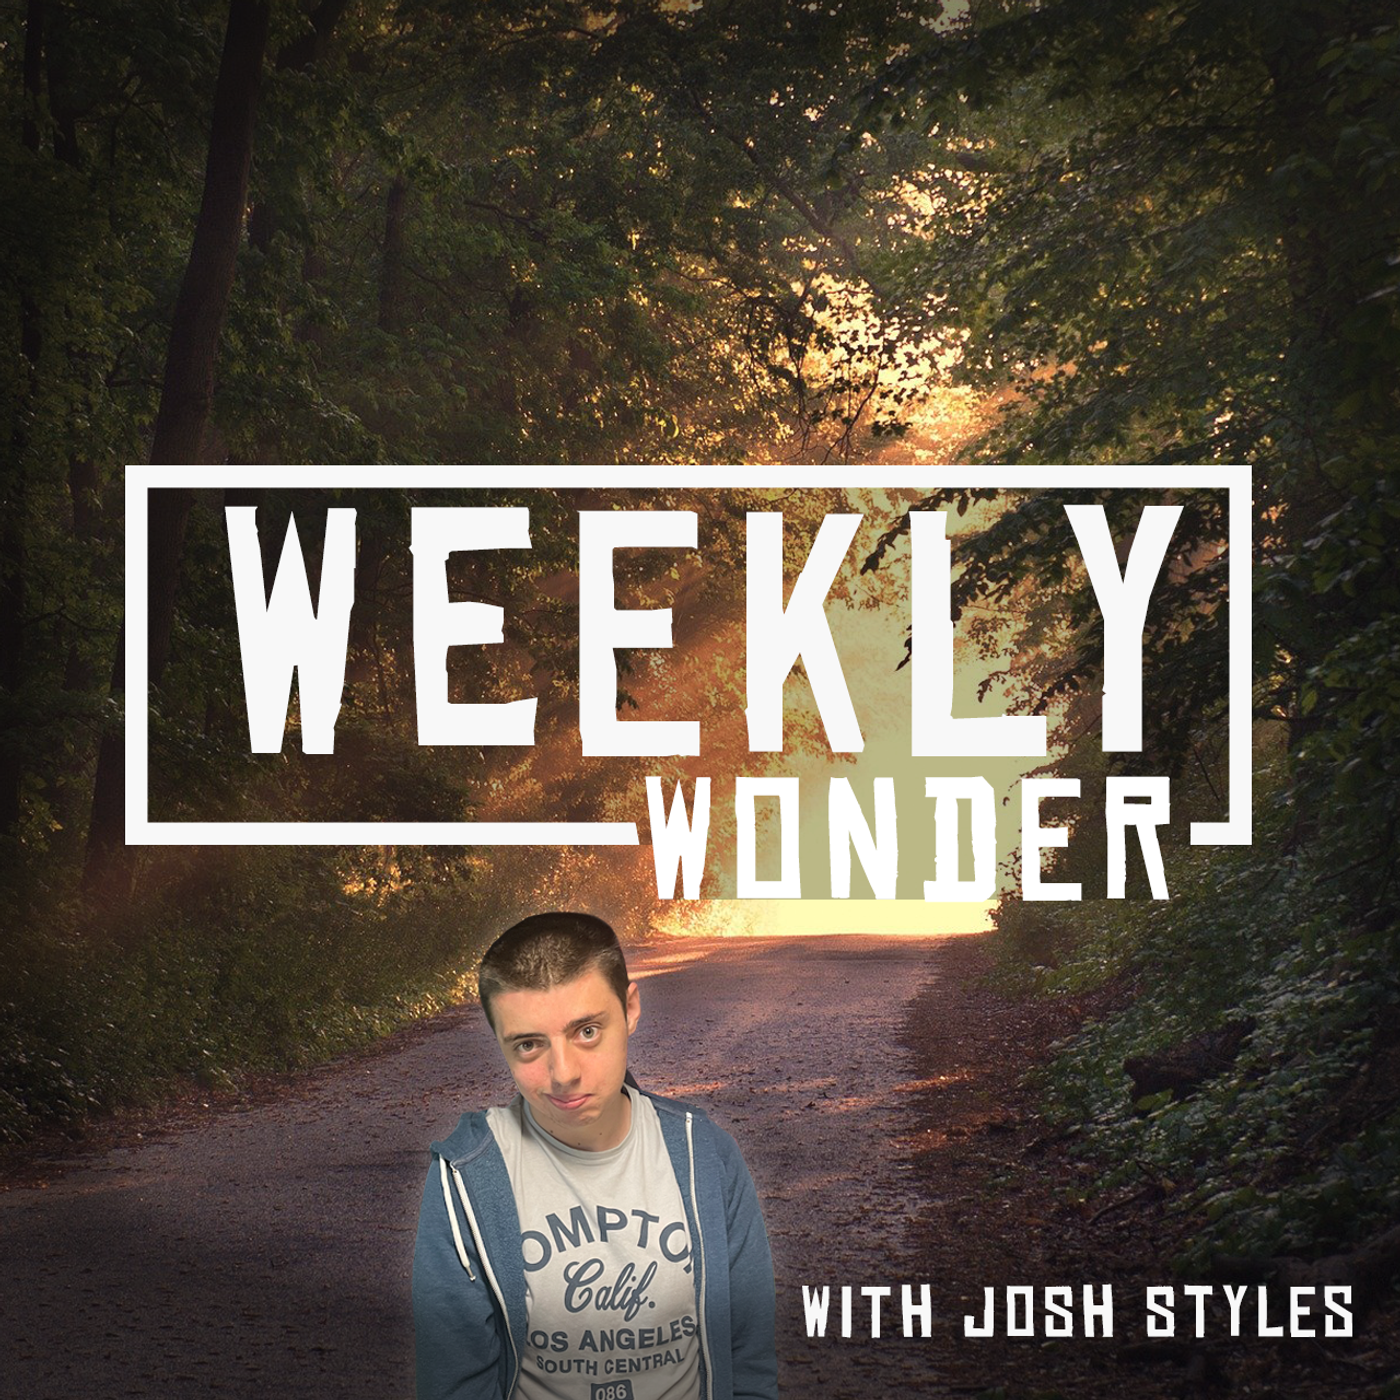 The weekly Wonder